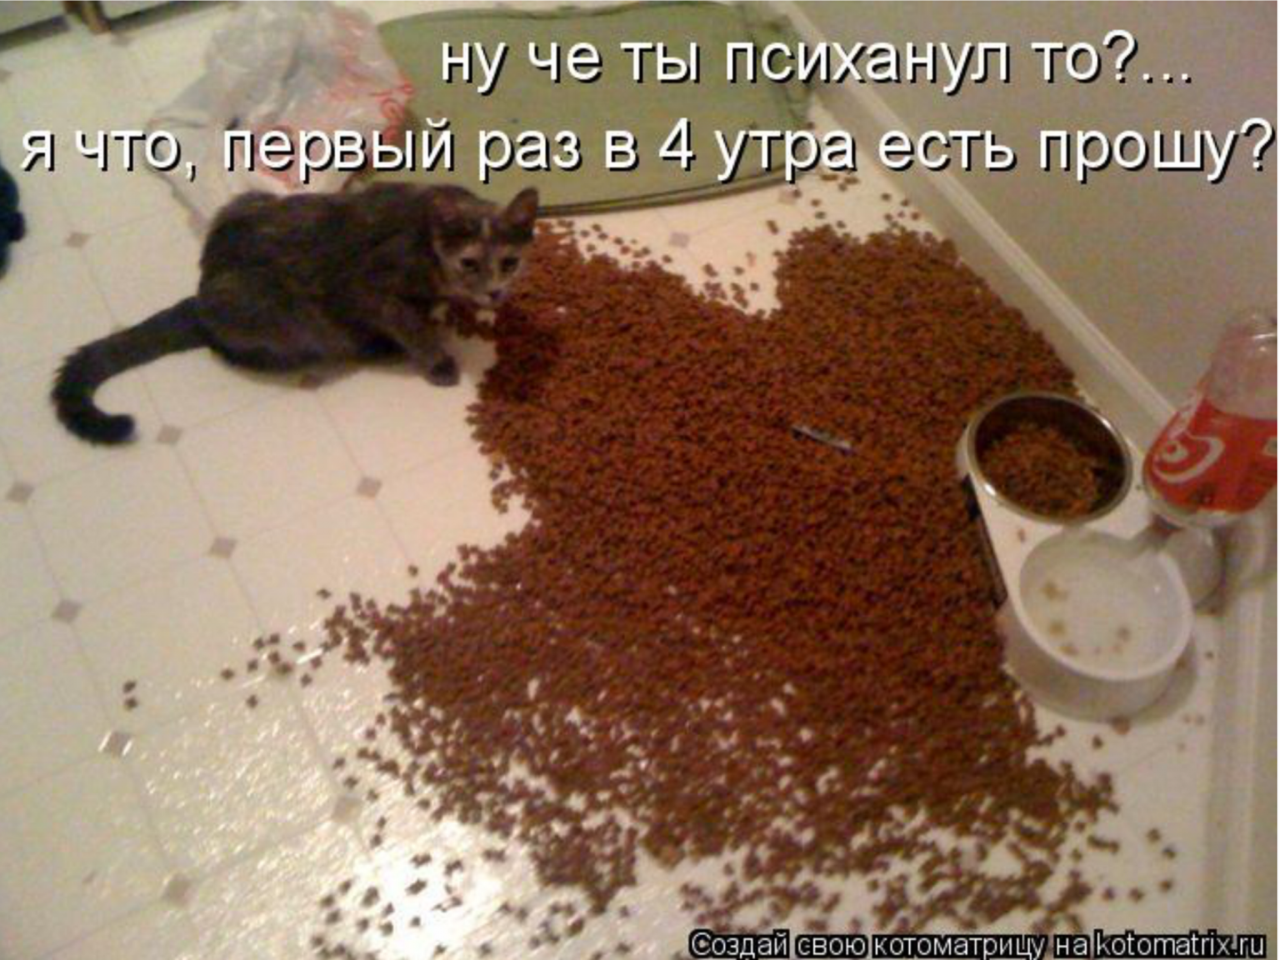 Муж ничего не ест. Ну че ты психанул то кот. Хозяин психанул. Психанула корм коту. Кот рассыпал корм.